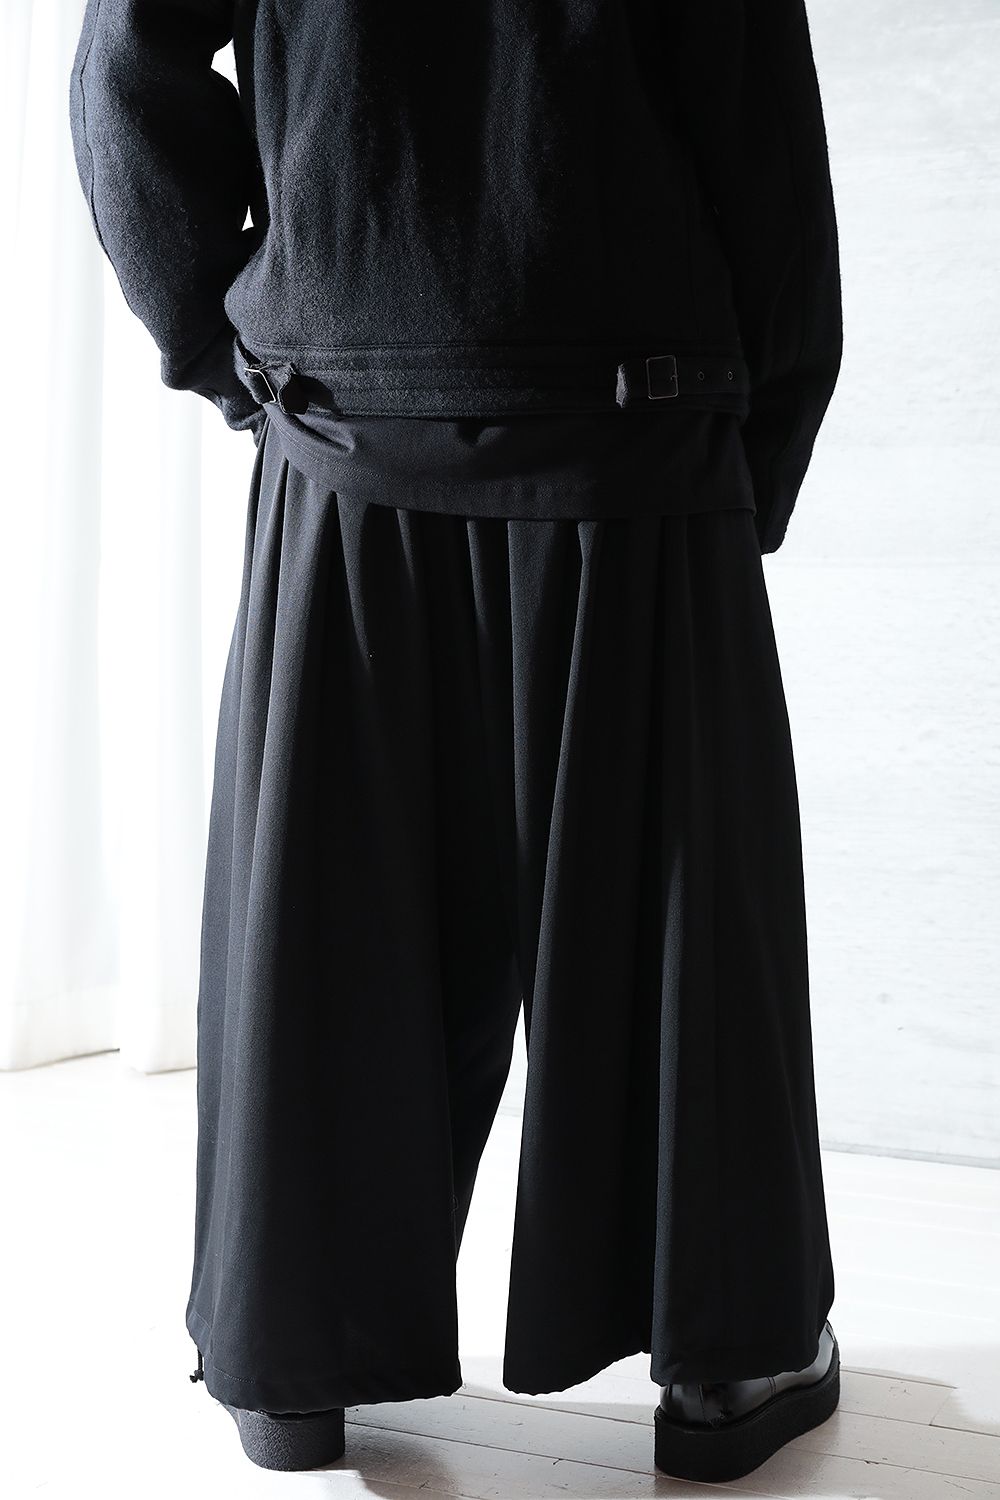 Yohji Yamamoto Pour Homme 23AW ギャバ パンツ